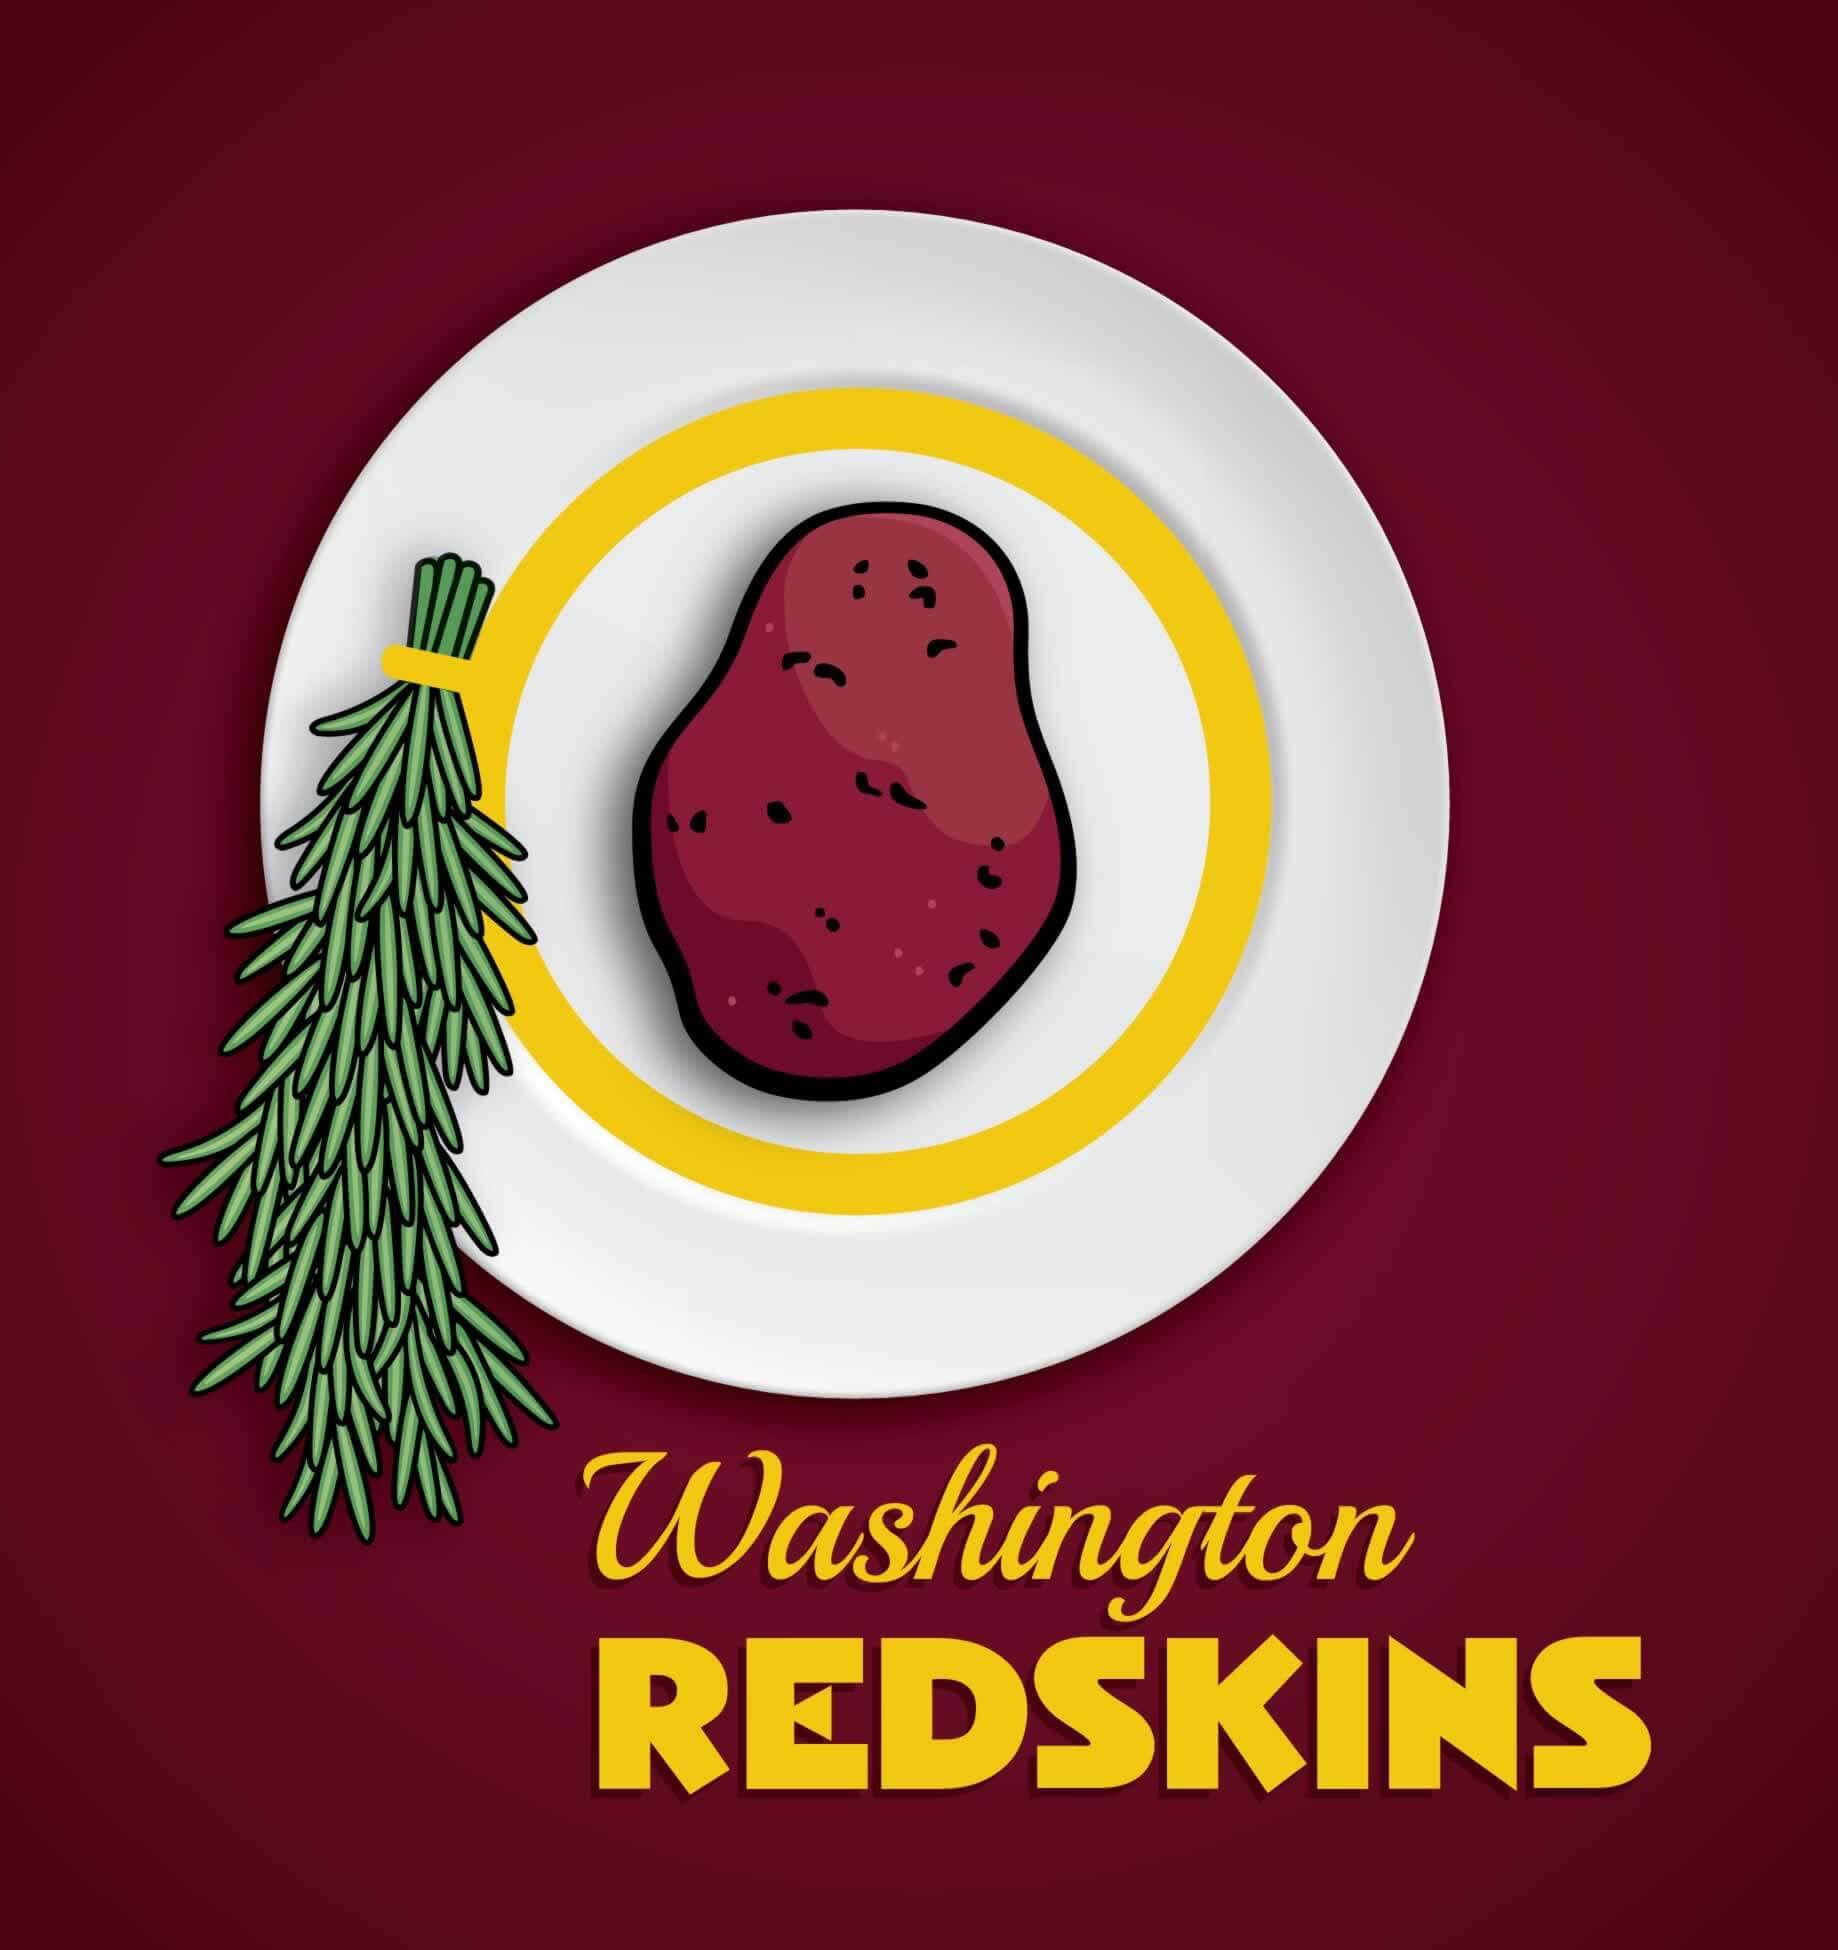 Red Potatoes Logo - No Need for Redskins to Change Name, Says PETA | PETA